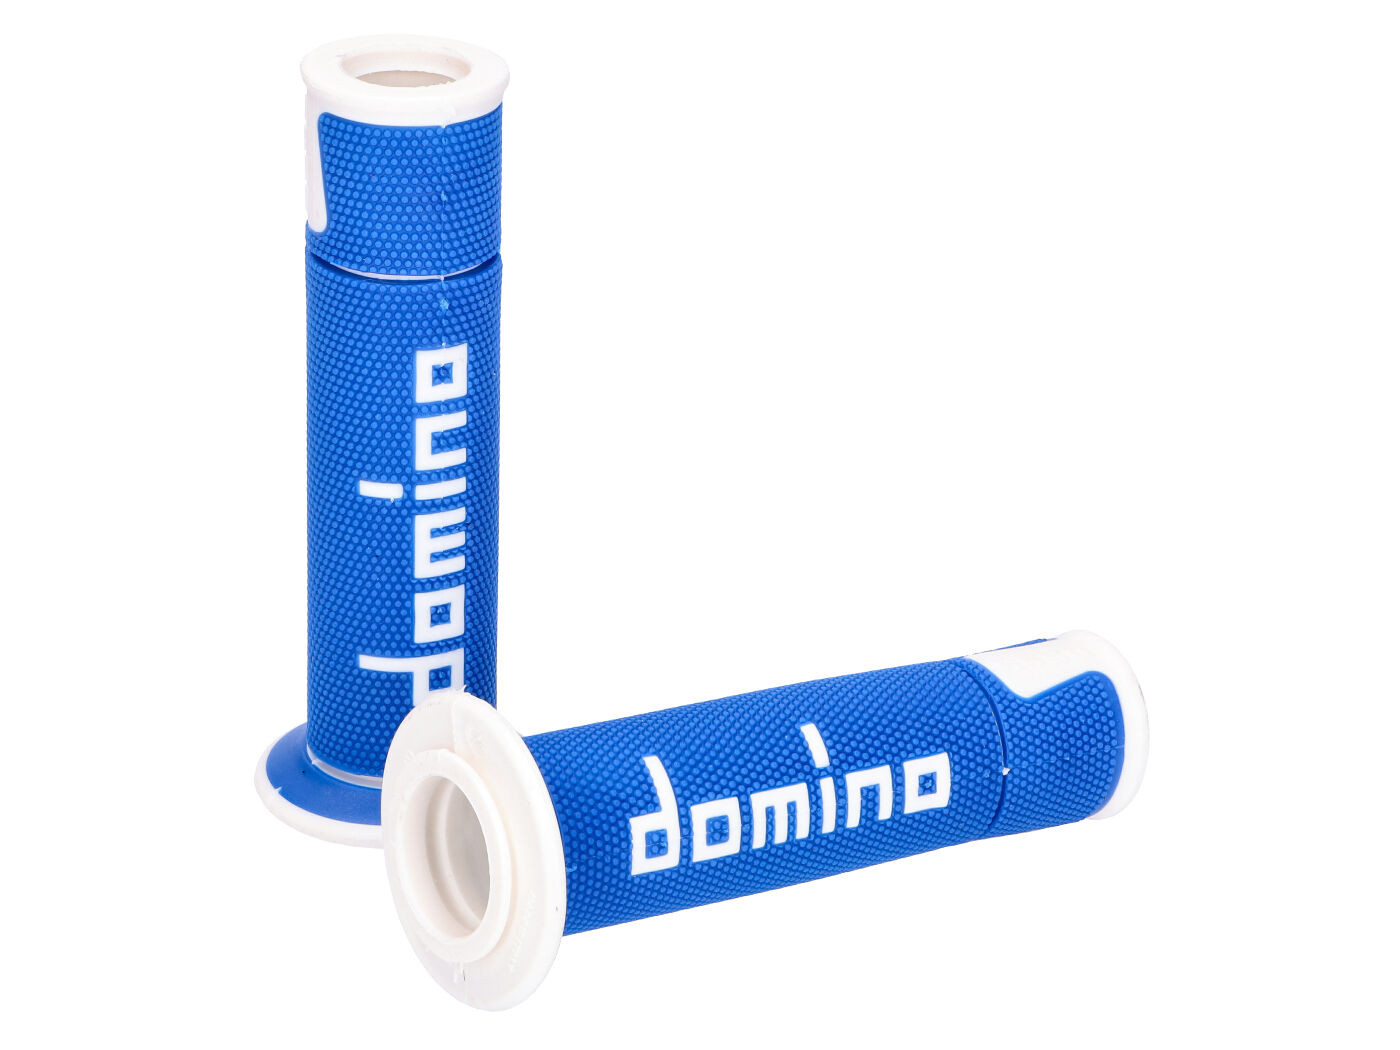 Domino A450 on-road verseny kék/fehér nyitott végű kormánymarkolat szett